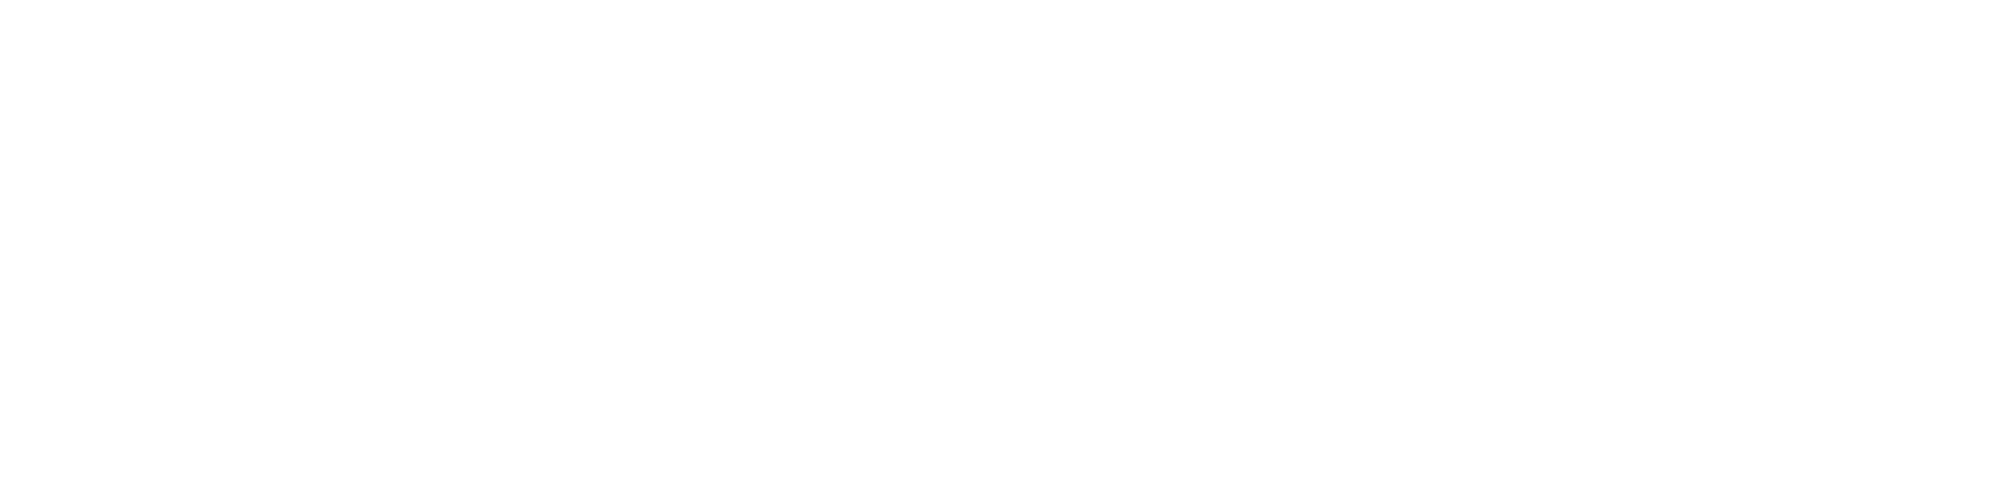 Swiss_Re_2013_logo